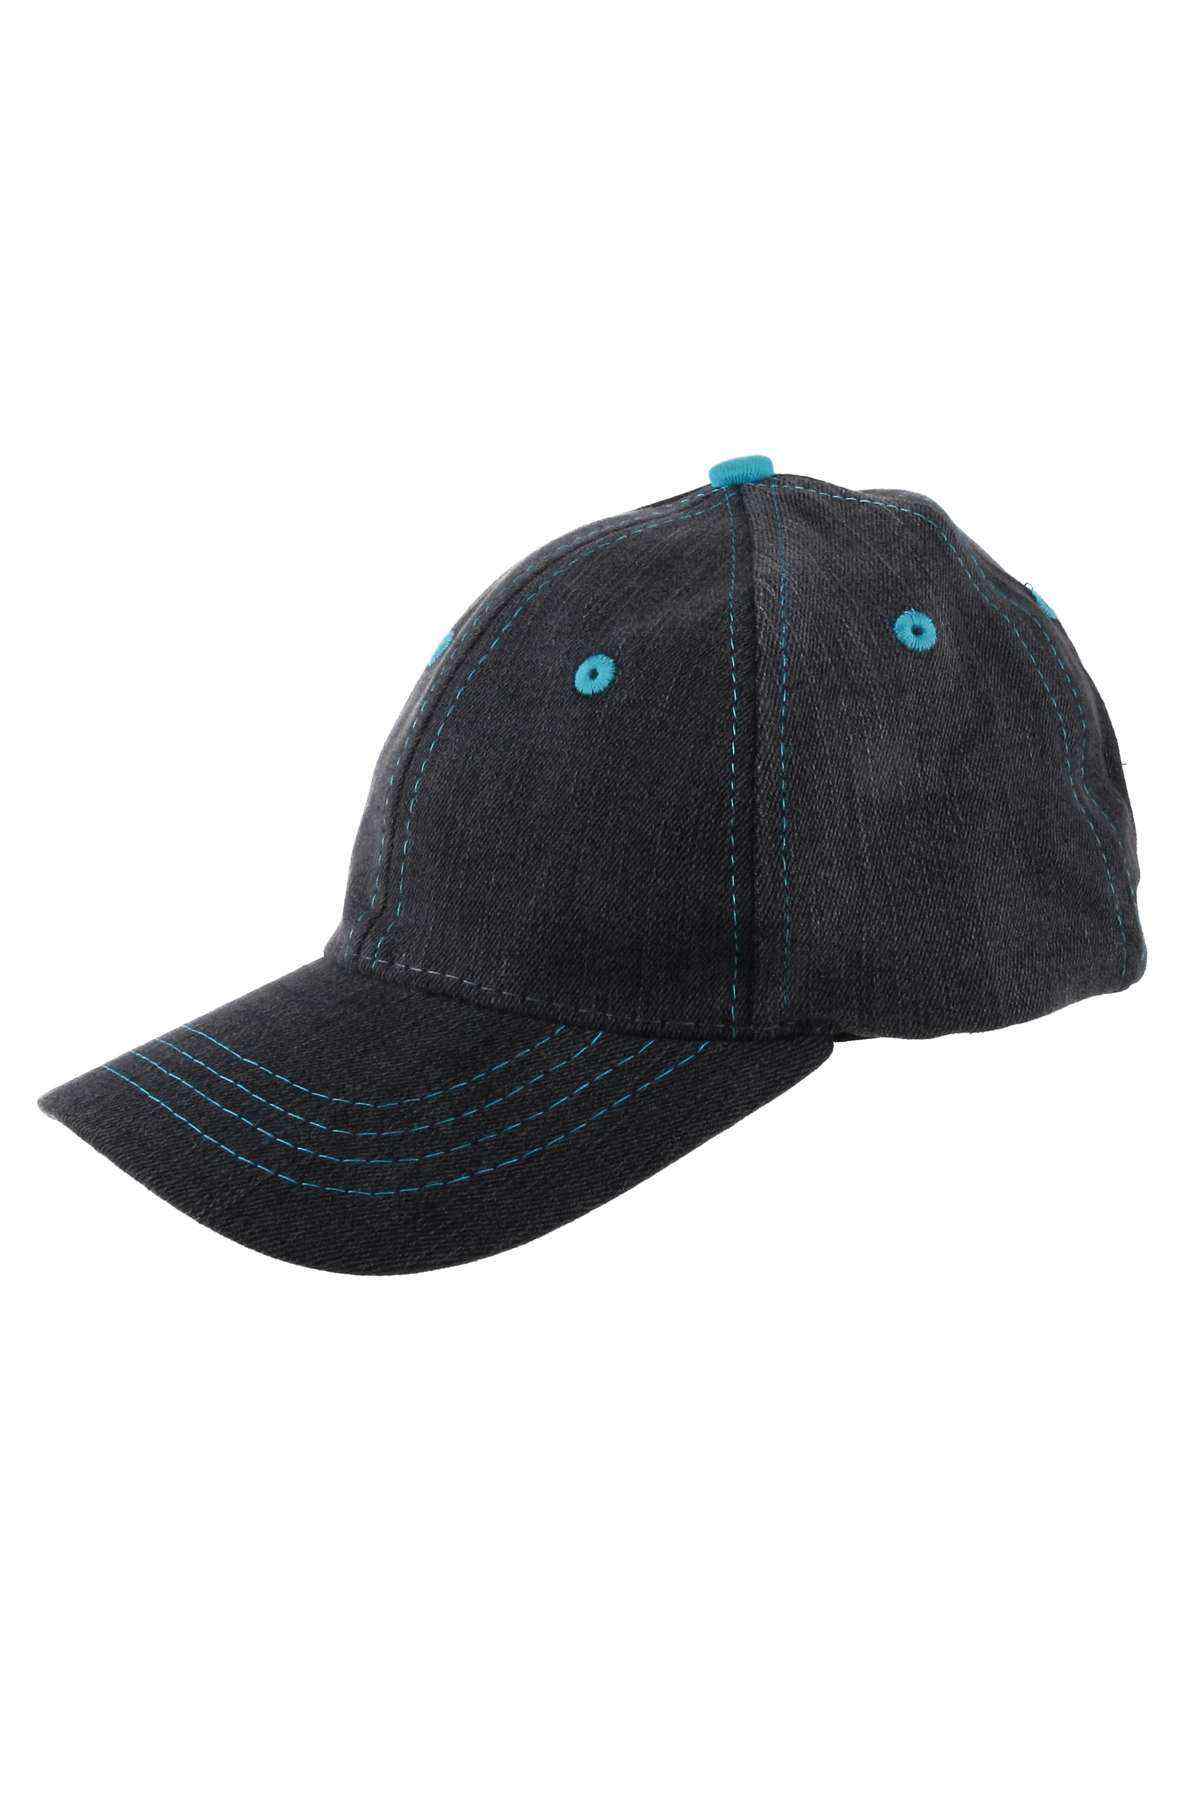 Erkek Çocuk Şapka Siyah-Mavi 8-12 Yaş